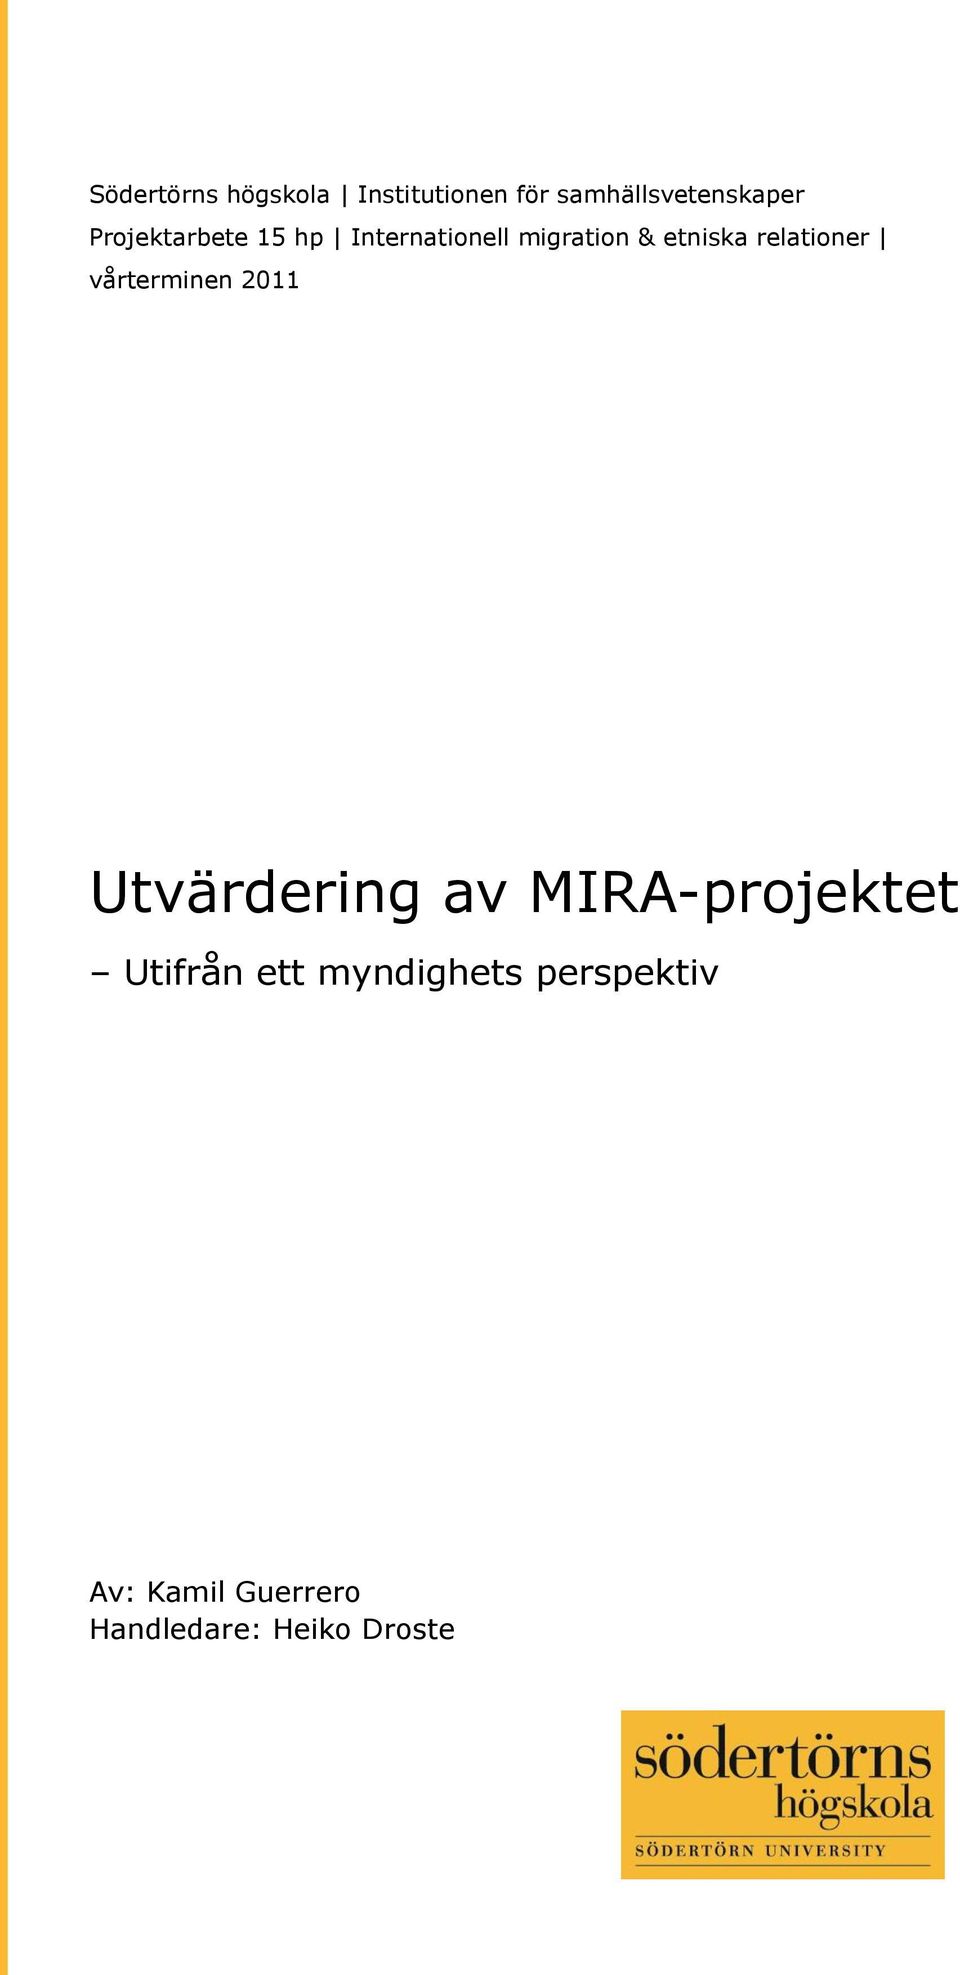 relationer vårterminen 2011 Utvärdering av MIRA-projektet